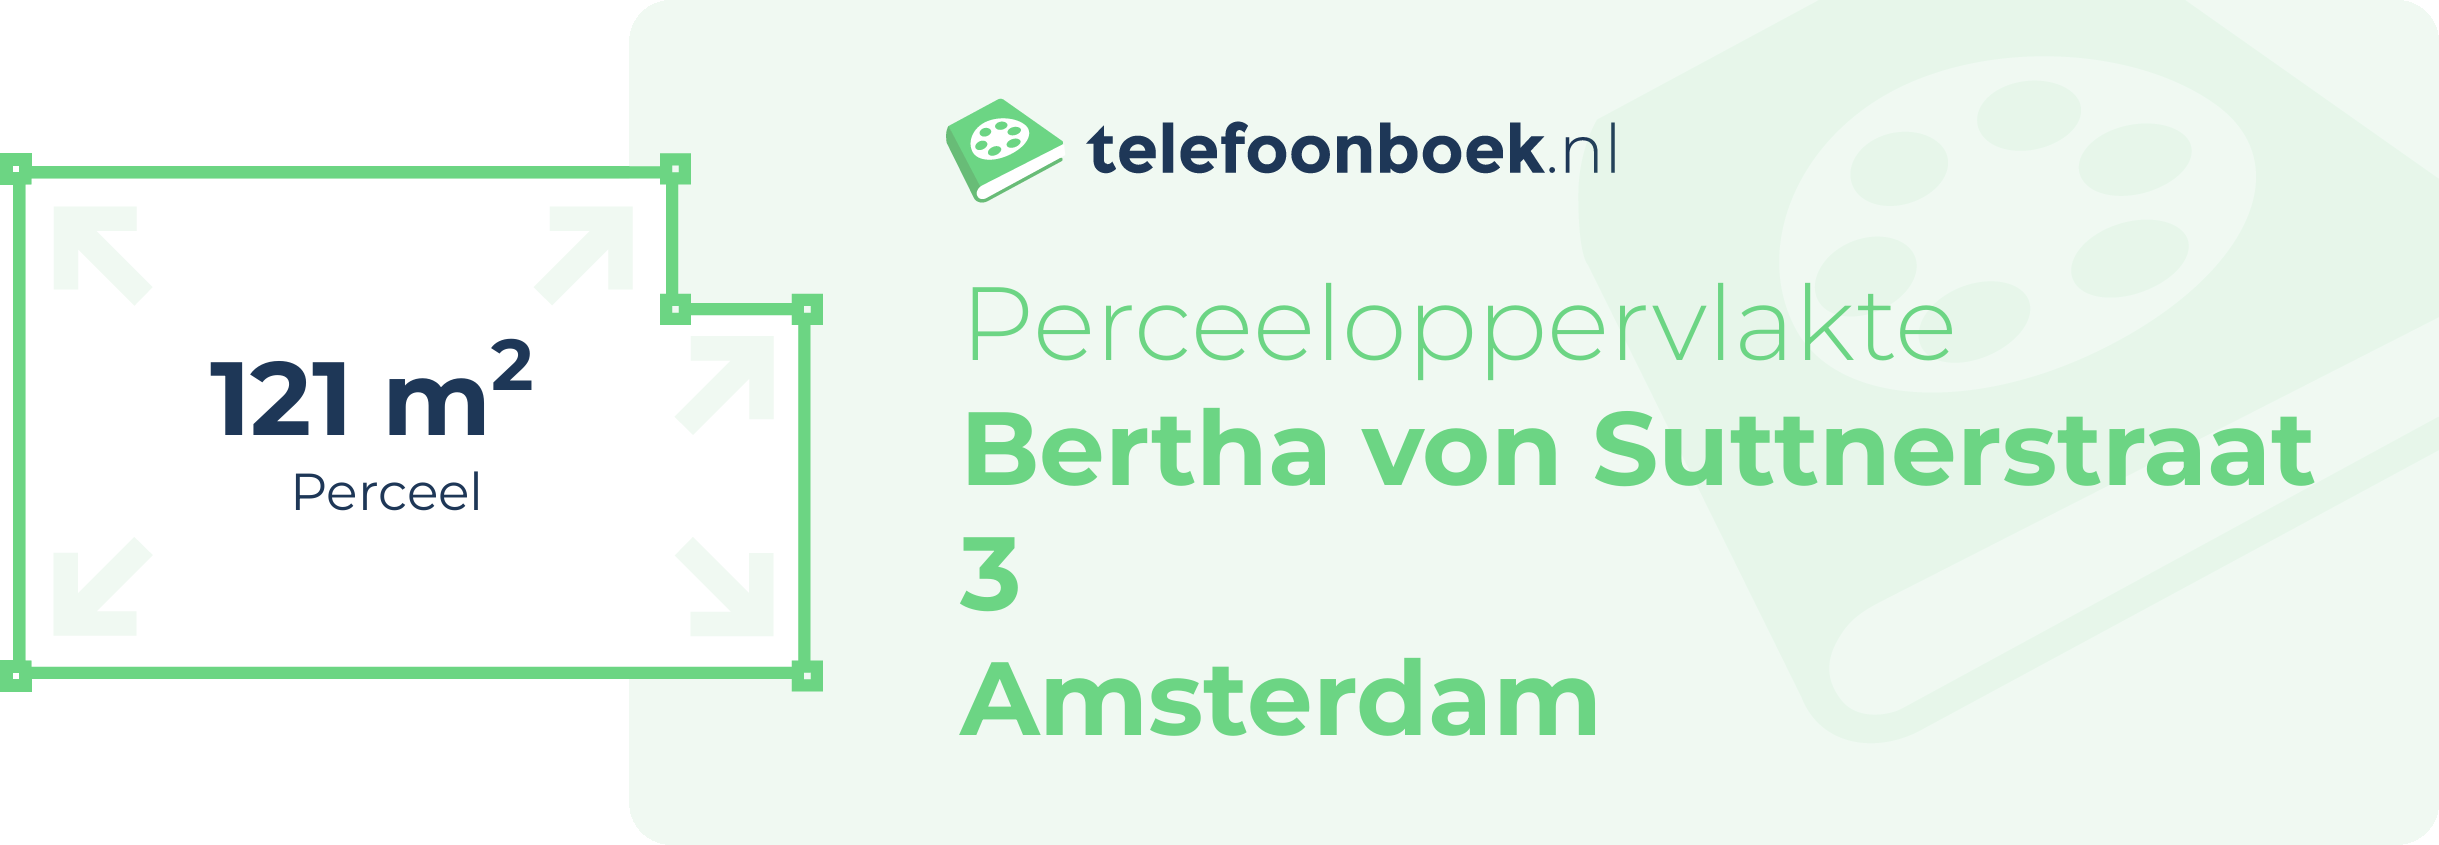 Perceeloppervlakte Bertha Von Suttnerstraat 3 Amsterdam